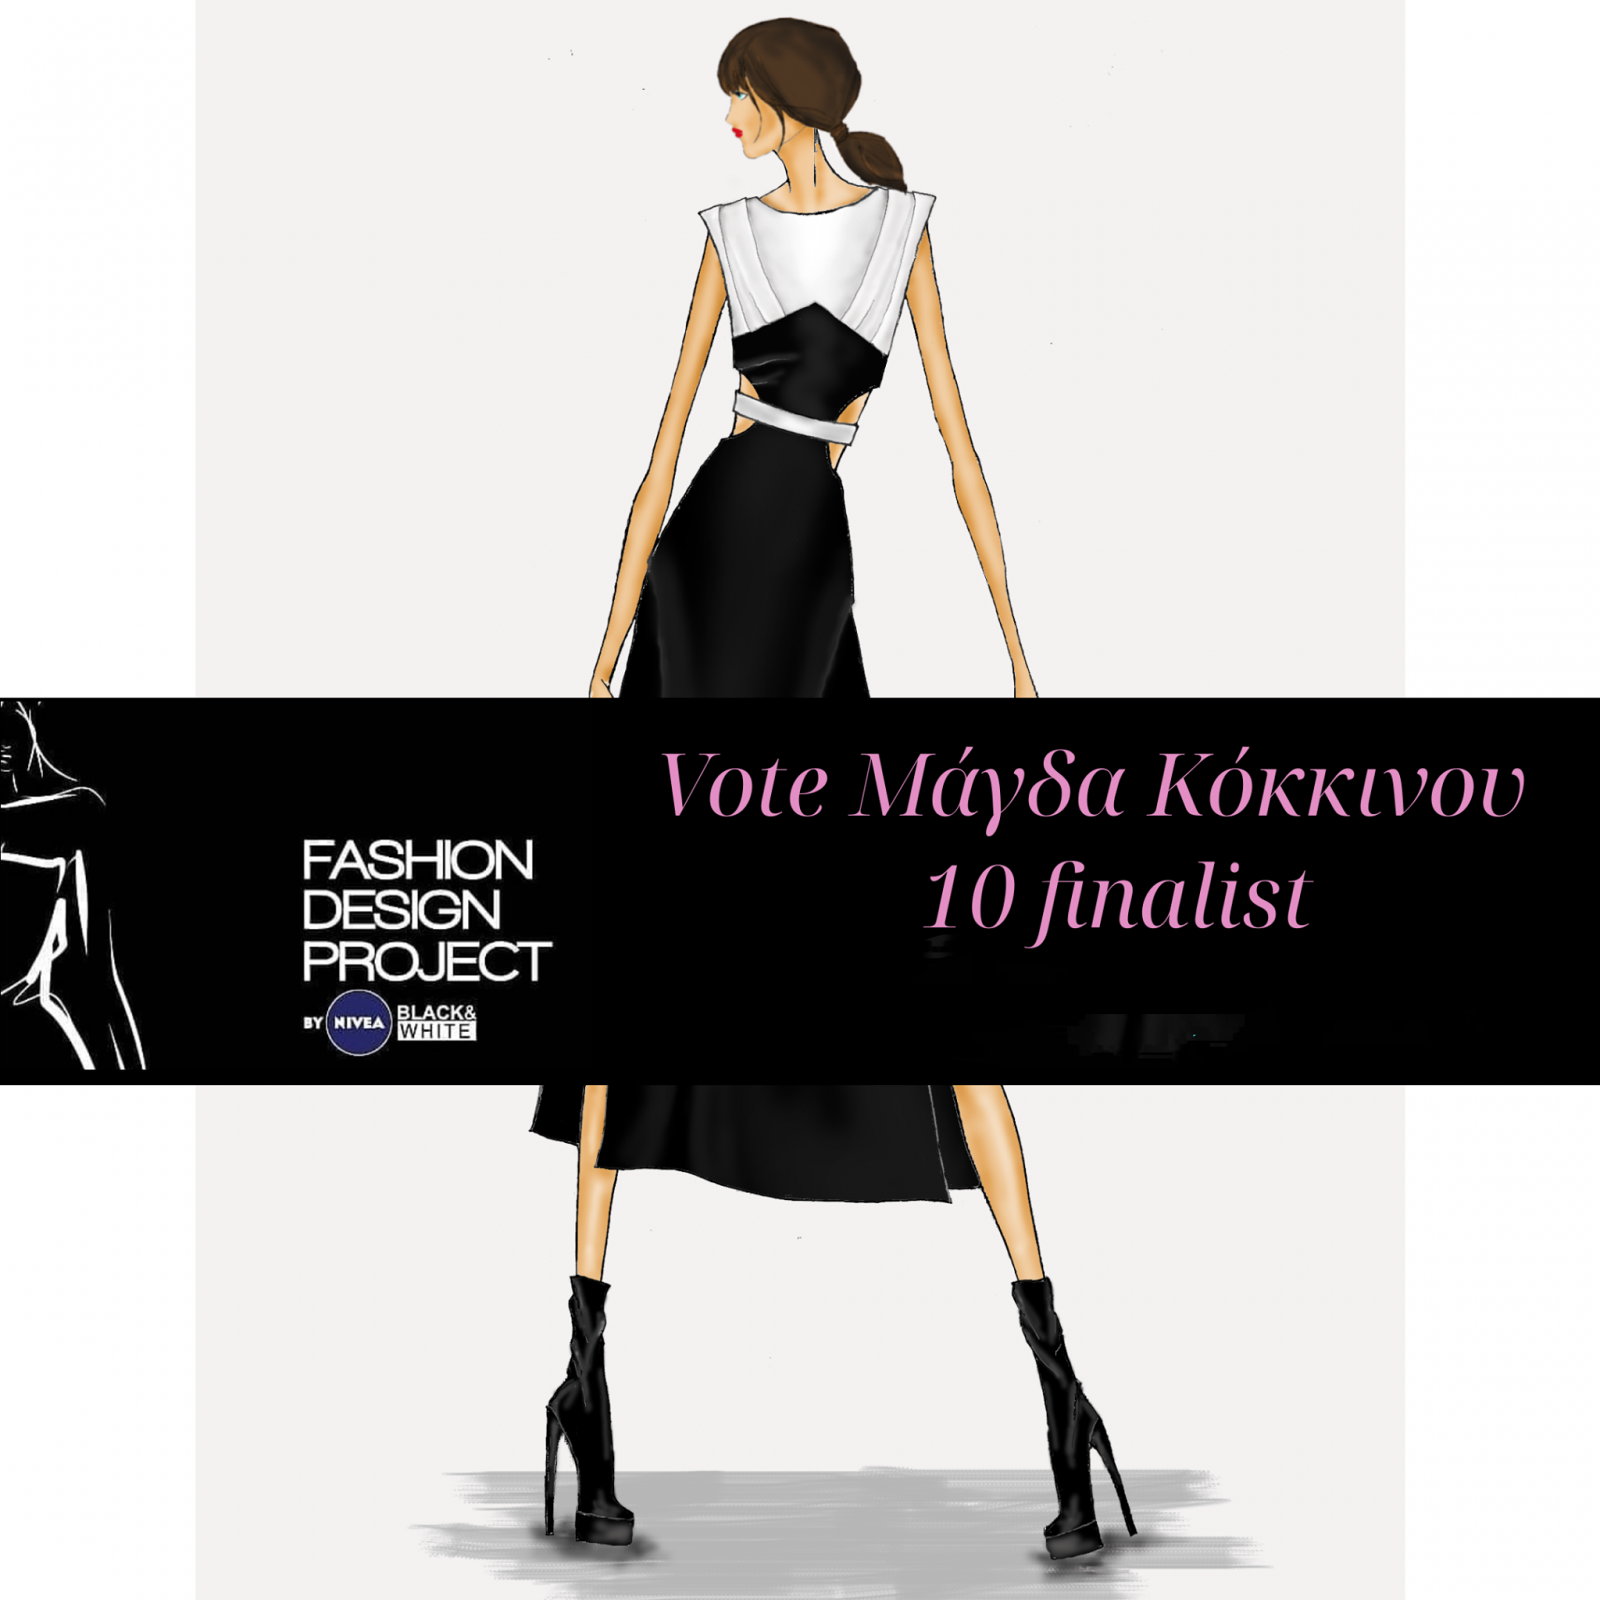 Η Γρεβενιώτισσα Μάγδα Κόκκινου διακρίθηκε ανάμεσα στα 10 καλύτερα σχέδια πανελλαδικώς, στο διαγωνισμό Fashion design project by NIVEA